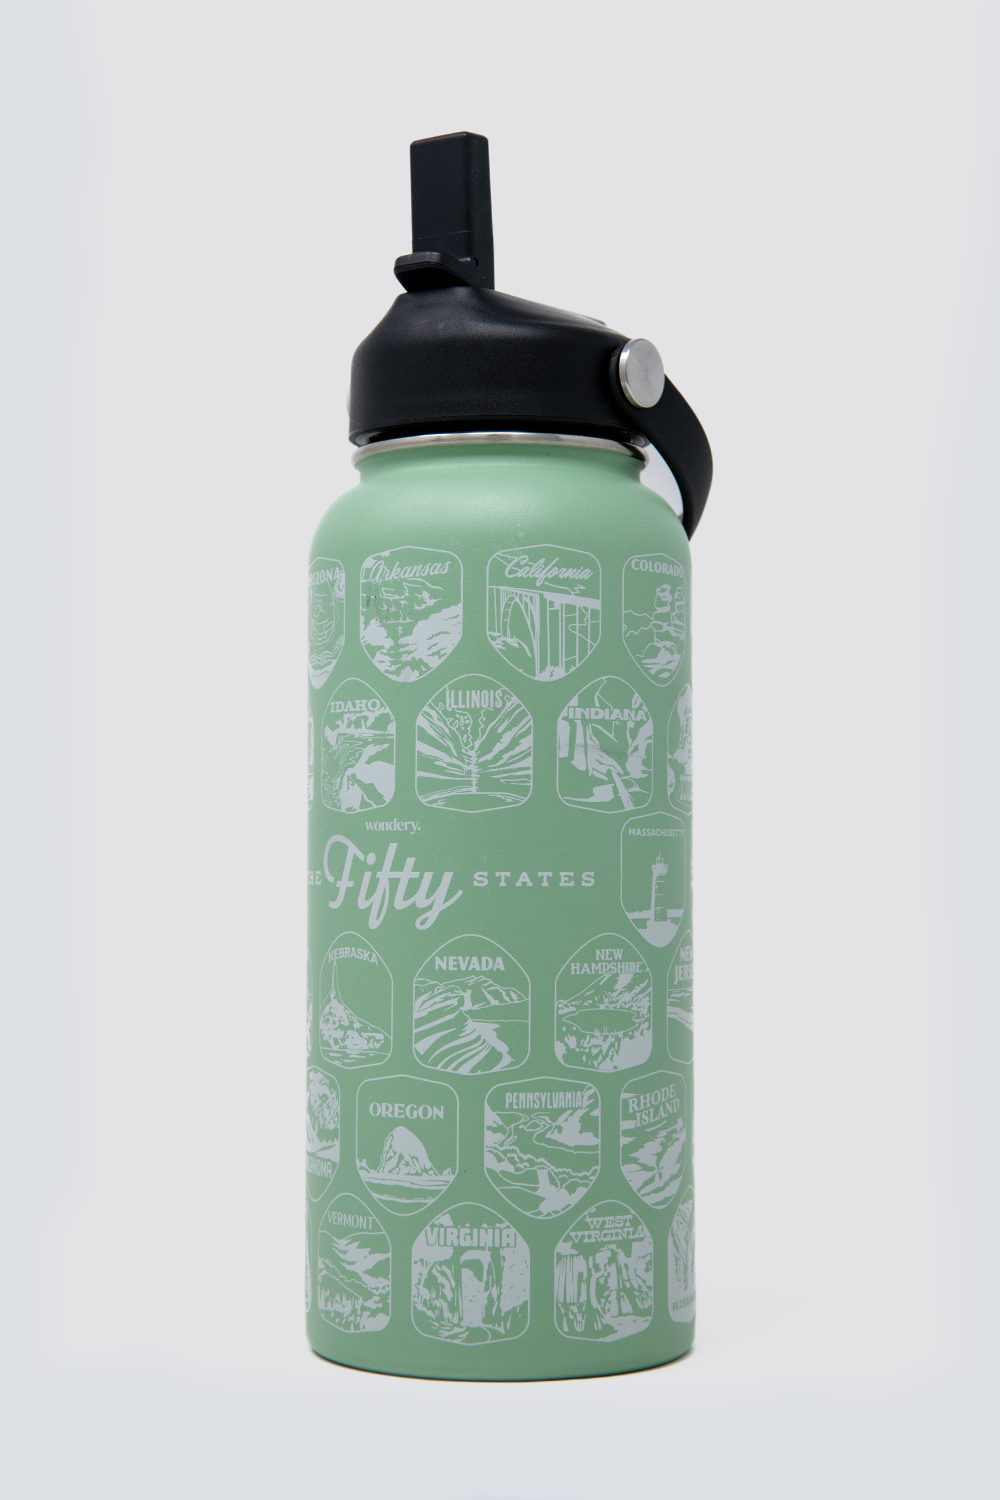 Green HydroFlask Water Bottle